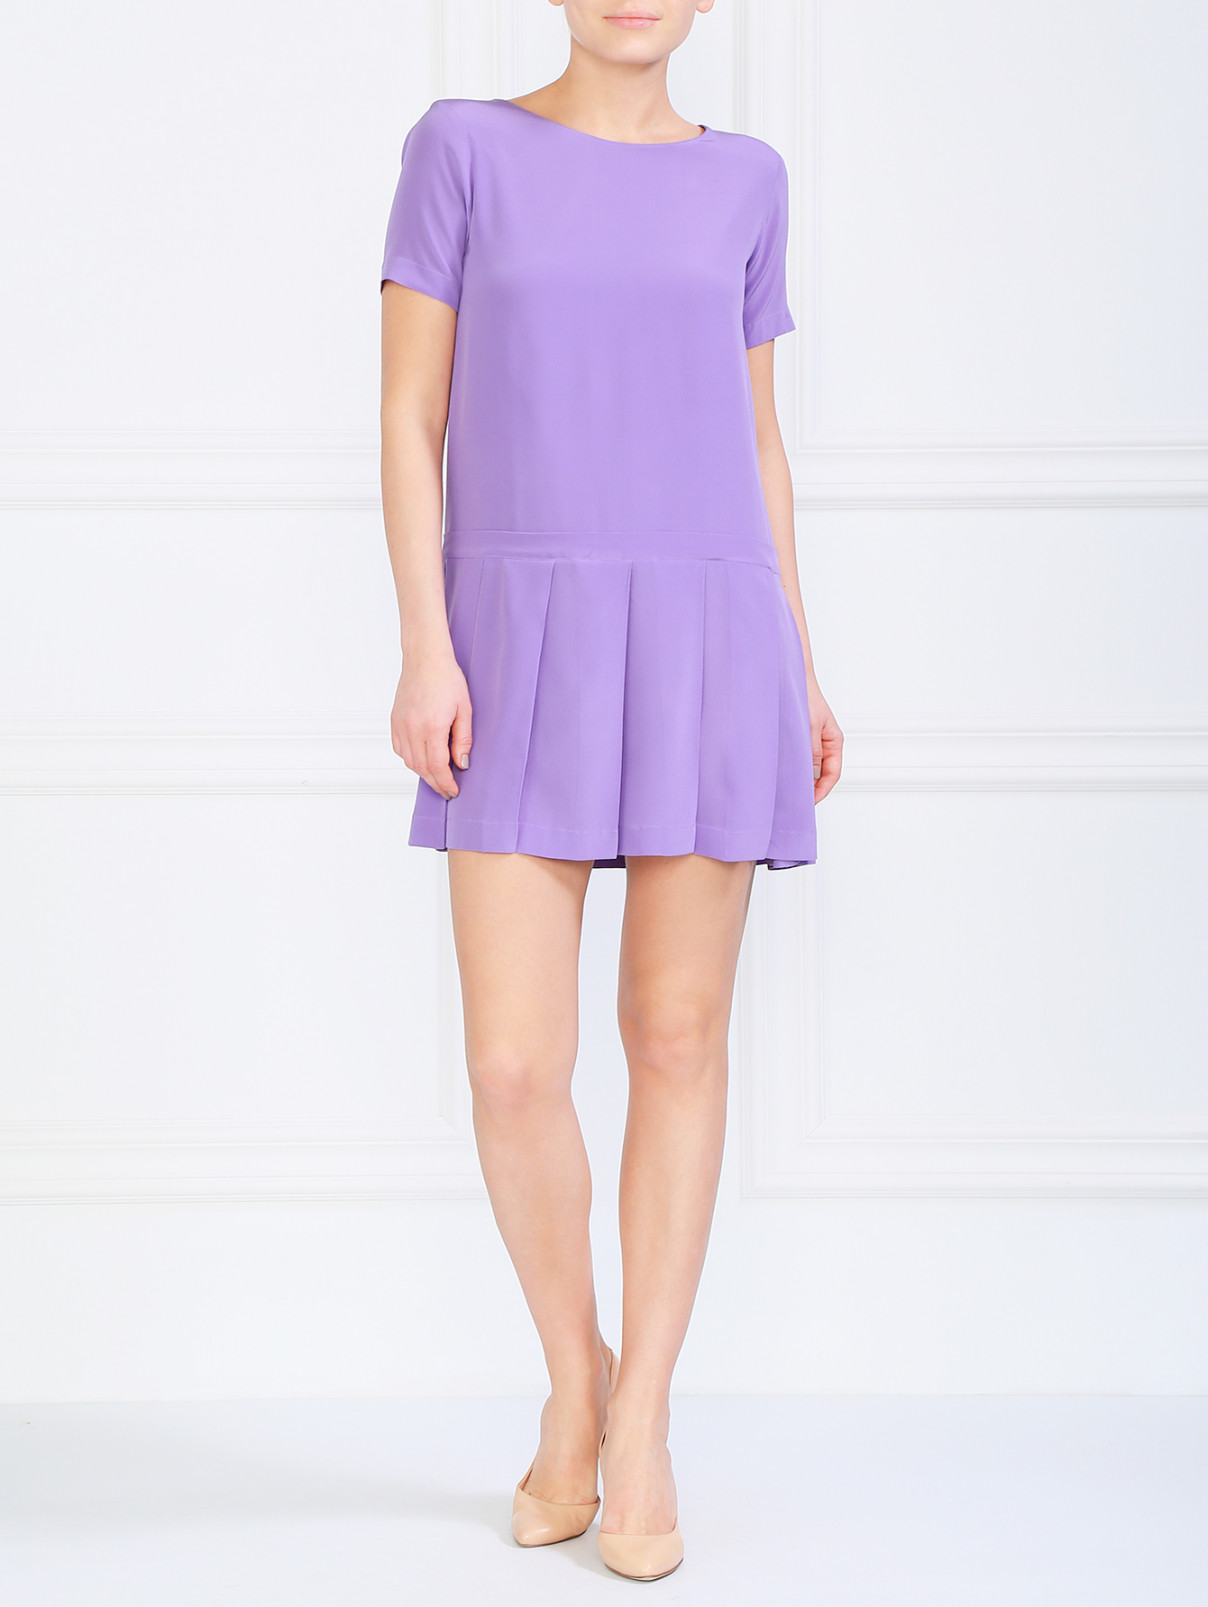 Платье с заниженной талией и подолом-плиссе Moschino  –  Модель Общий вид  – Цвет:  Фиолетовый